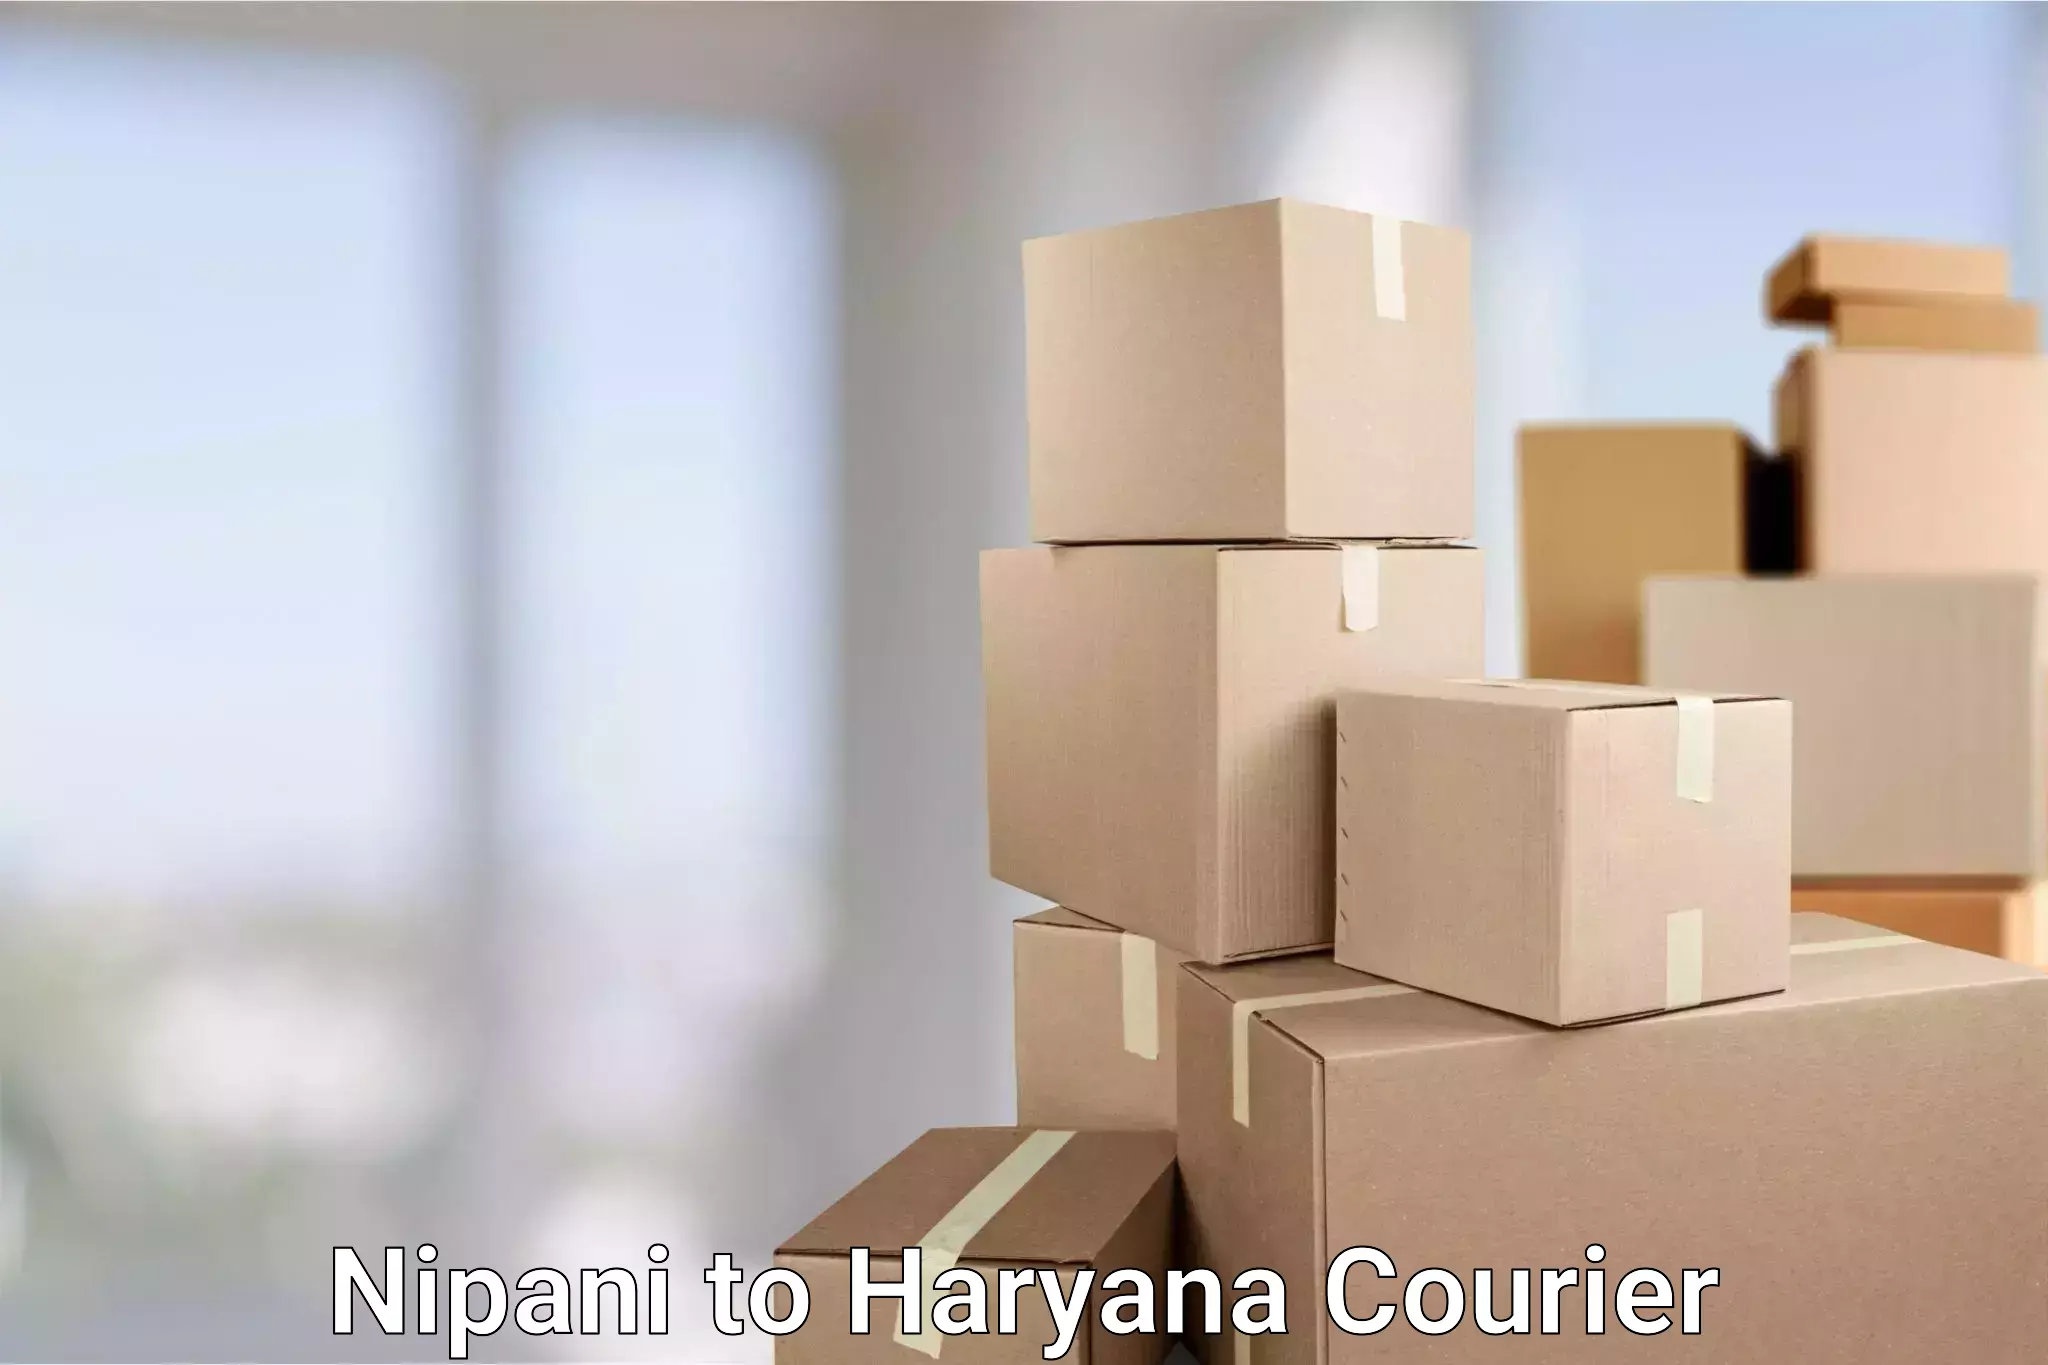 Reliable delivery network Nipani to IIIT Sonepat